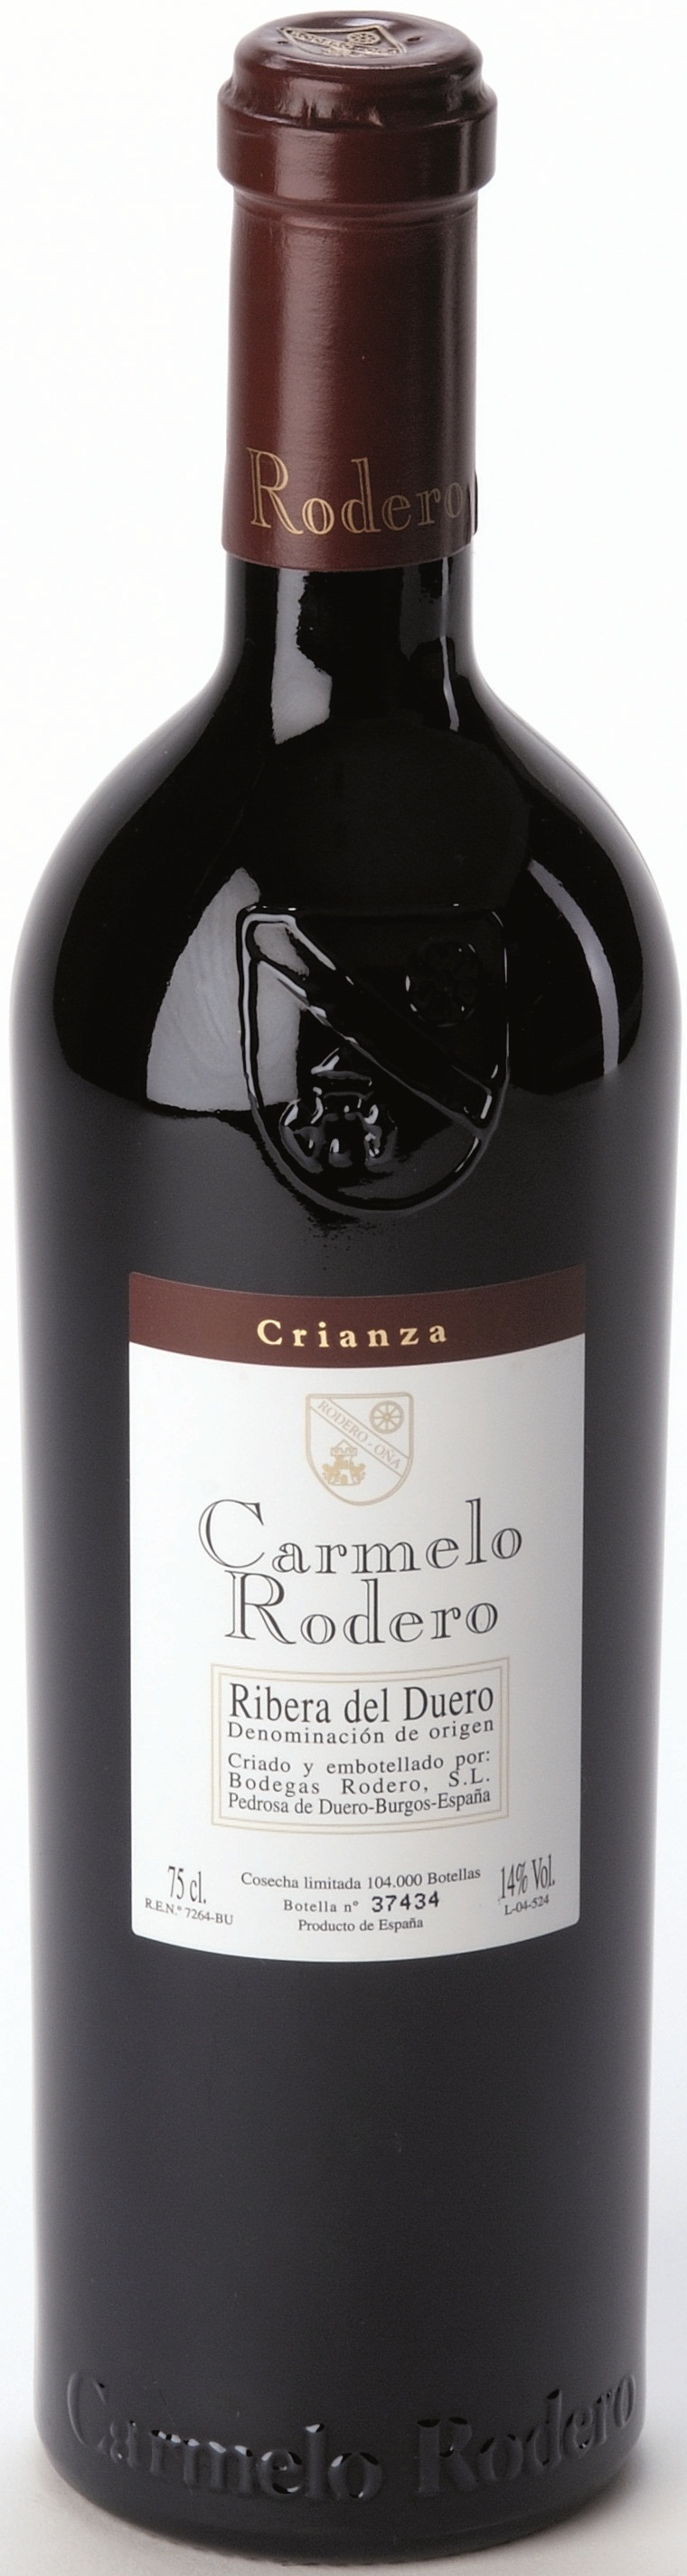 Image of Wine bottle Carmelo Rodero Crianza